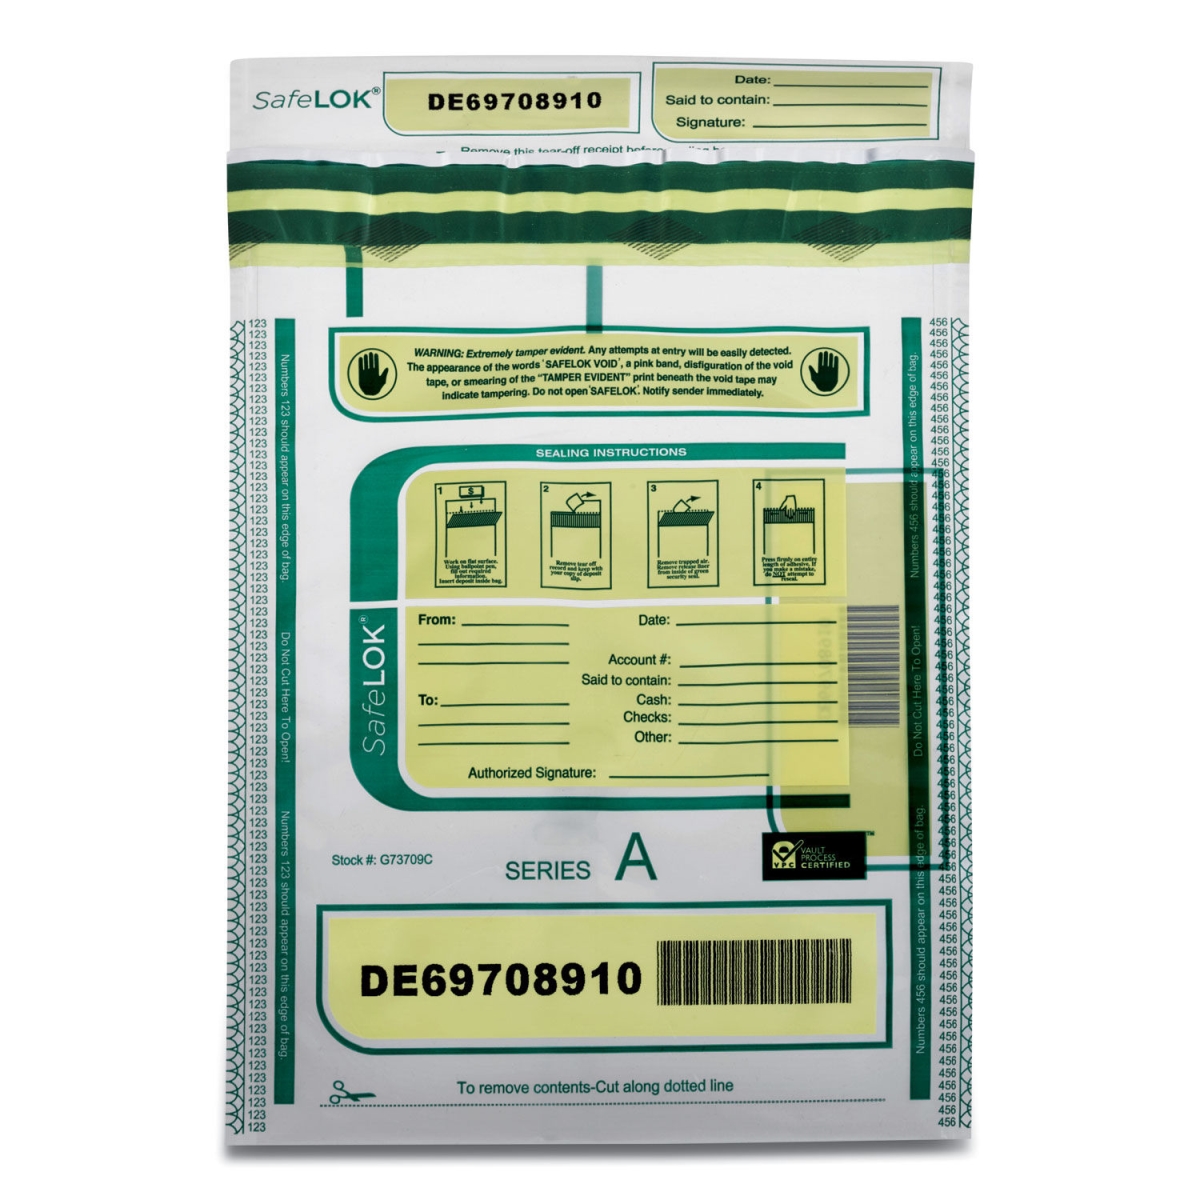 CNK585087 9 x 12 in. Plastic Tamper-Evident Deposit Bag, Clear - Pack of 100 -  Safe Lok